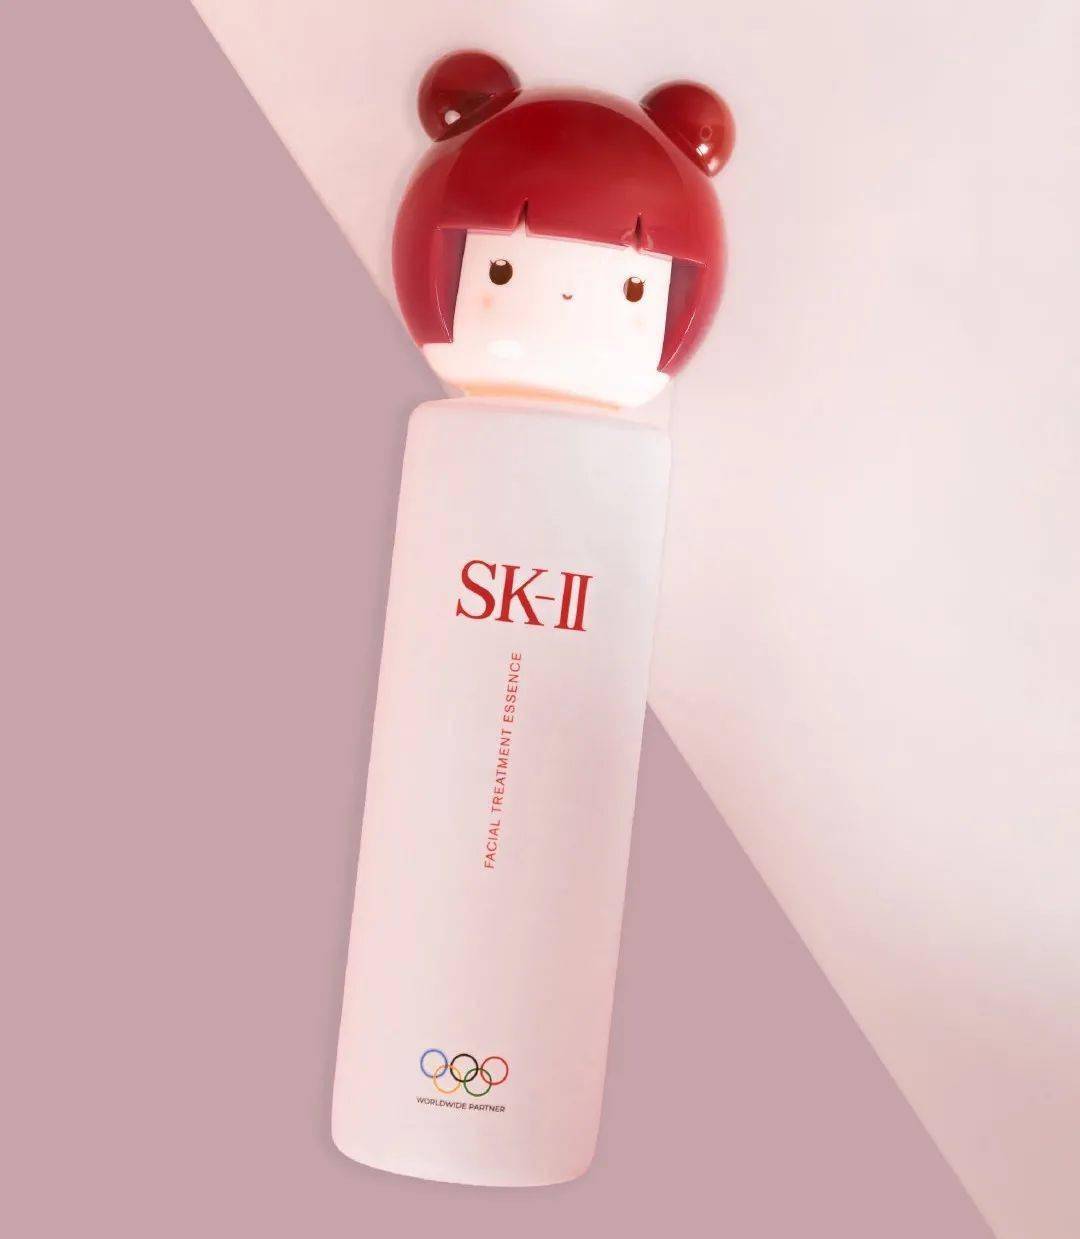 东京奥运限定"春日娃娃"款,奶白瓶身加上娃娃头像,看上去非常元气可爱